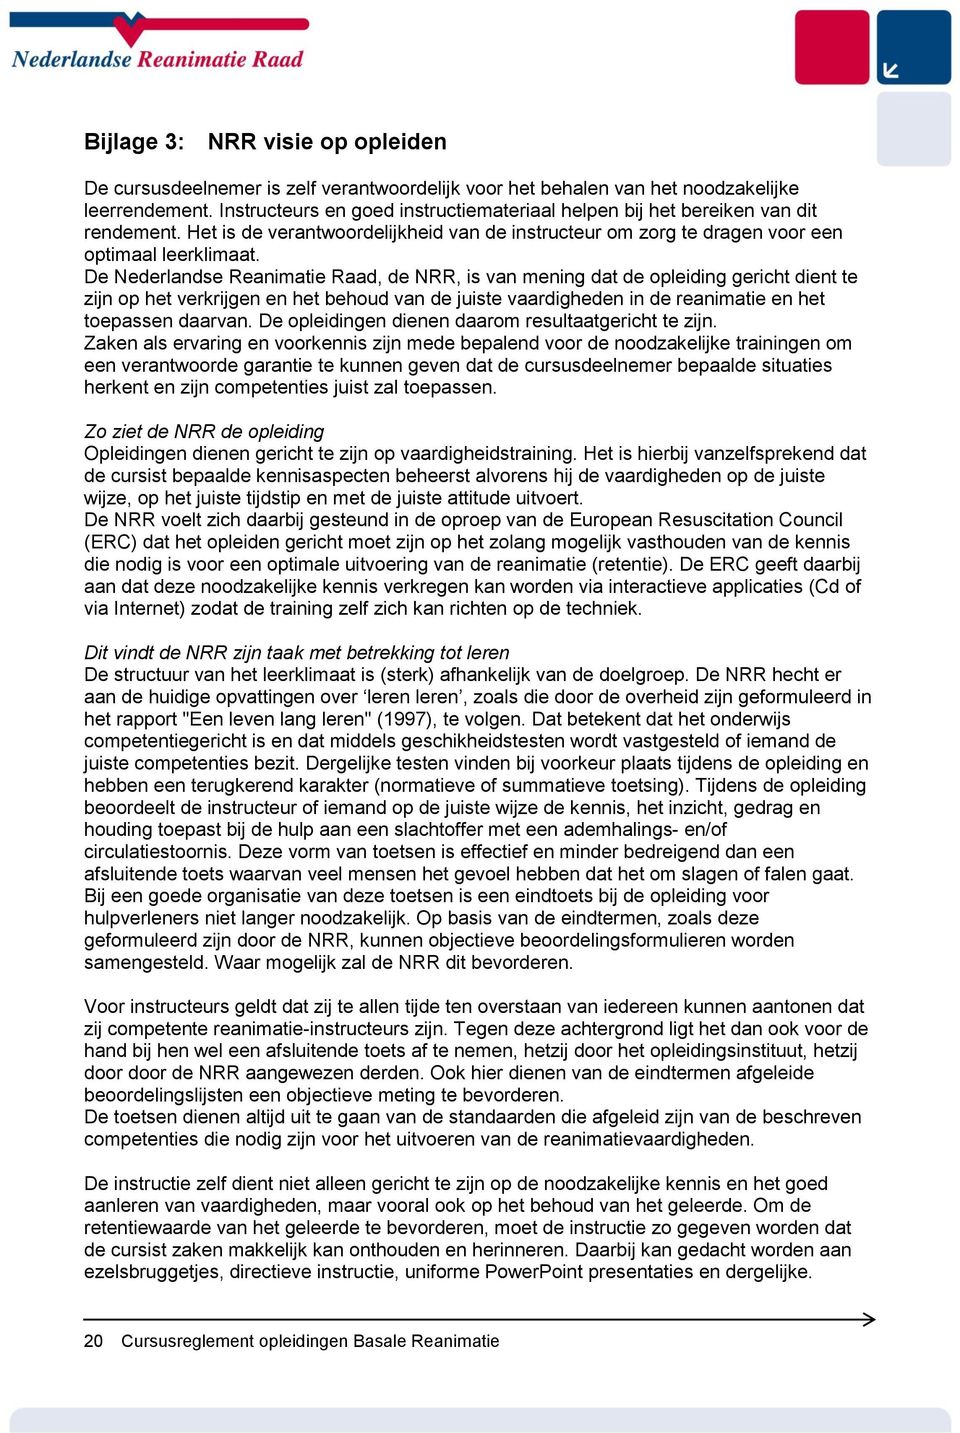 De Nederlandse Reanimatie Raad, de NRR, is van mening dat de opleiding gericht dient te zijn op het verkrijgen en het behoud van de juiste vaardigheden in de reanimatie en het toepassen daarvan.